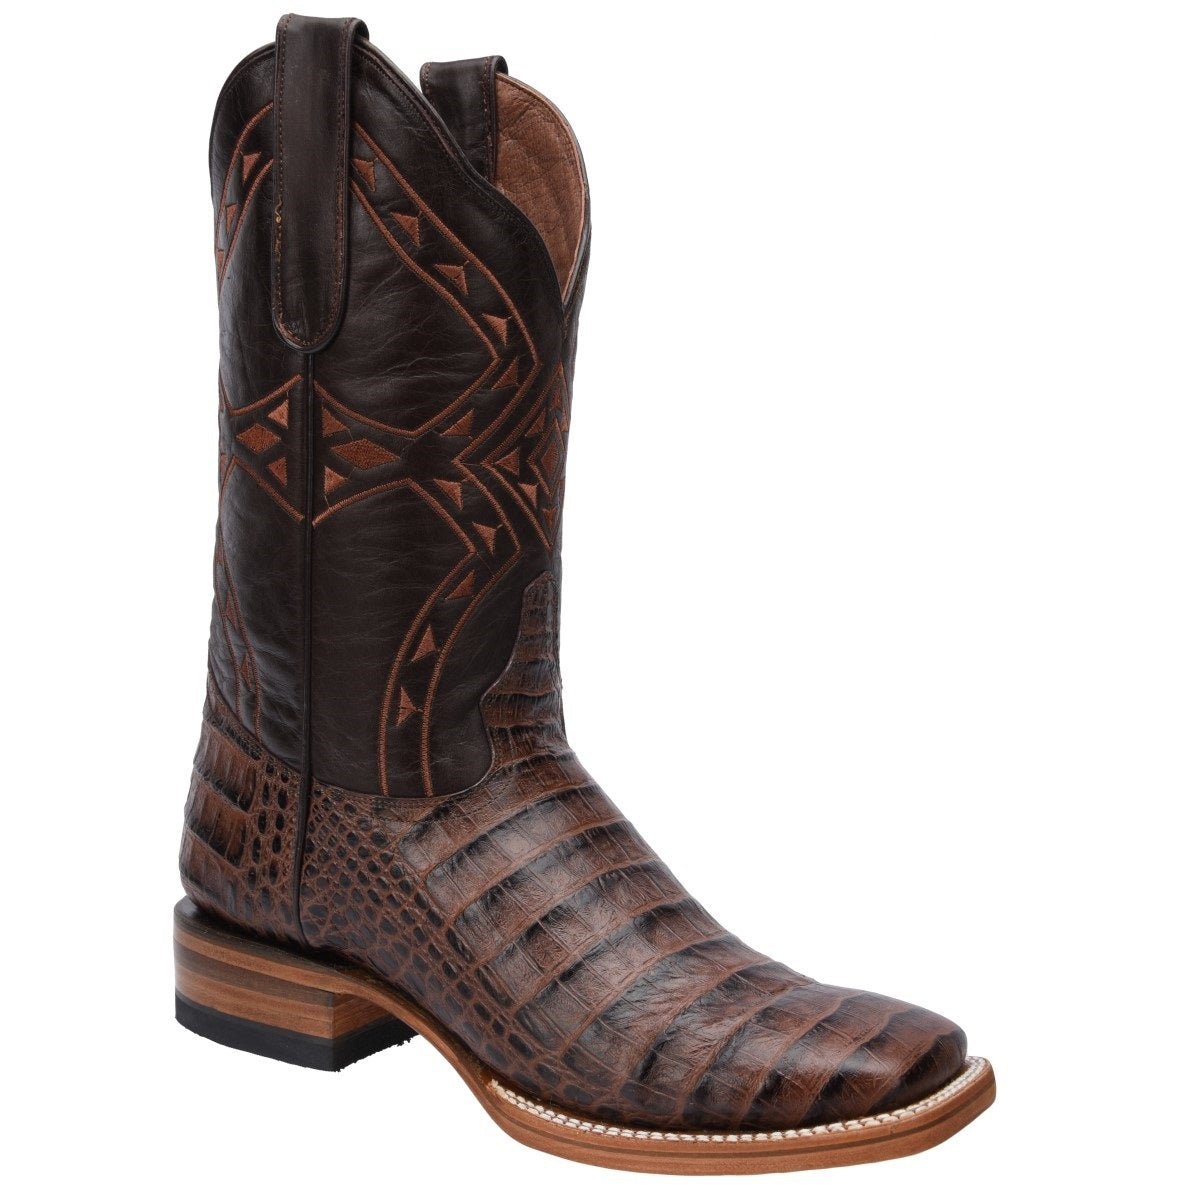 Botas Vaqueras TM-WD0361 - Western Boots